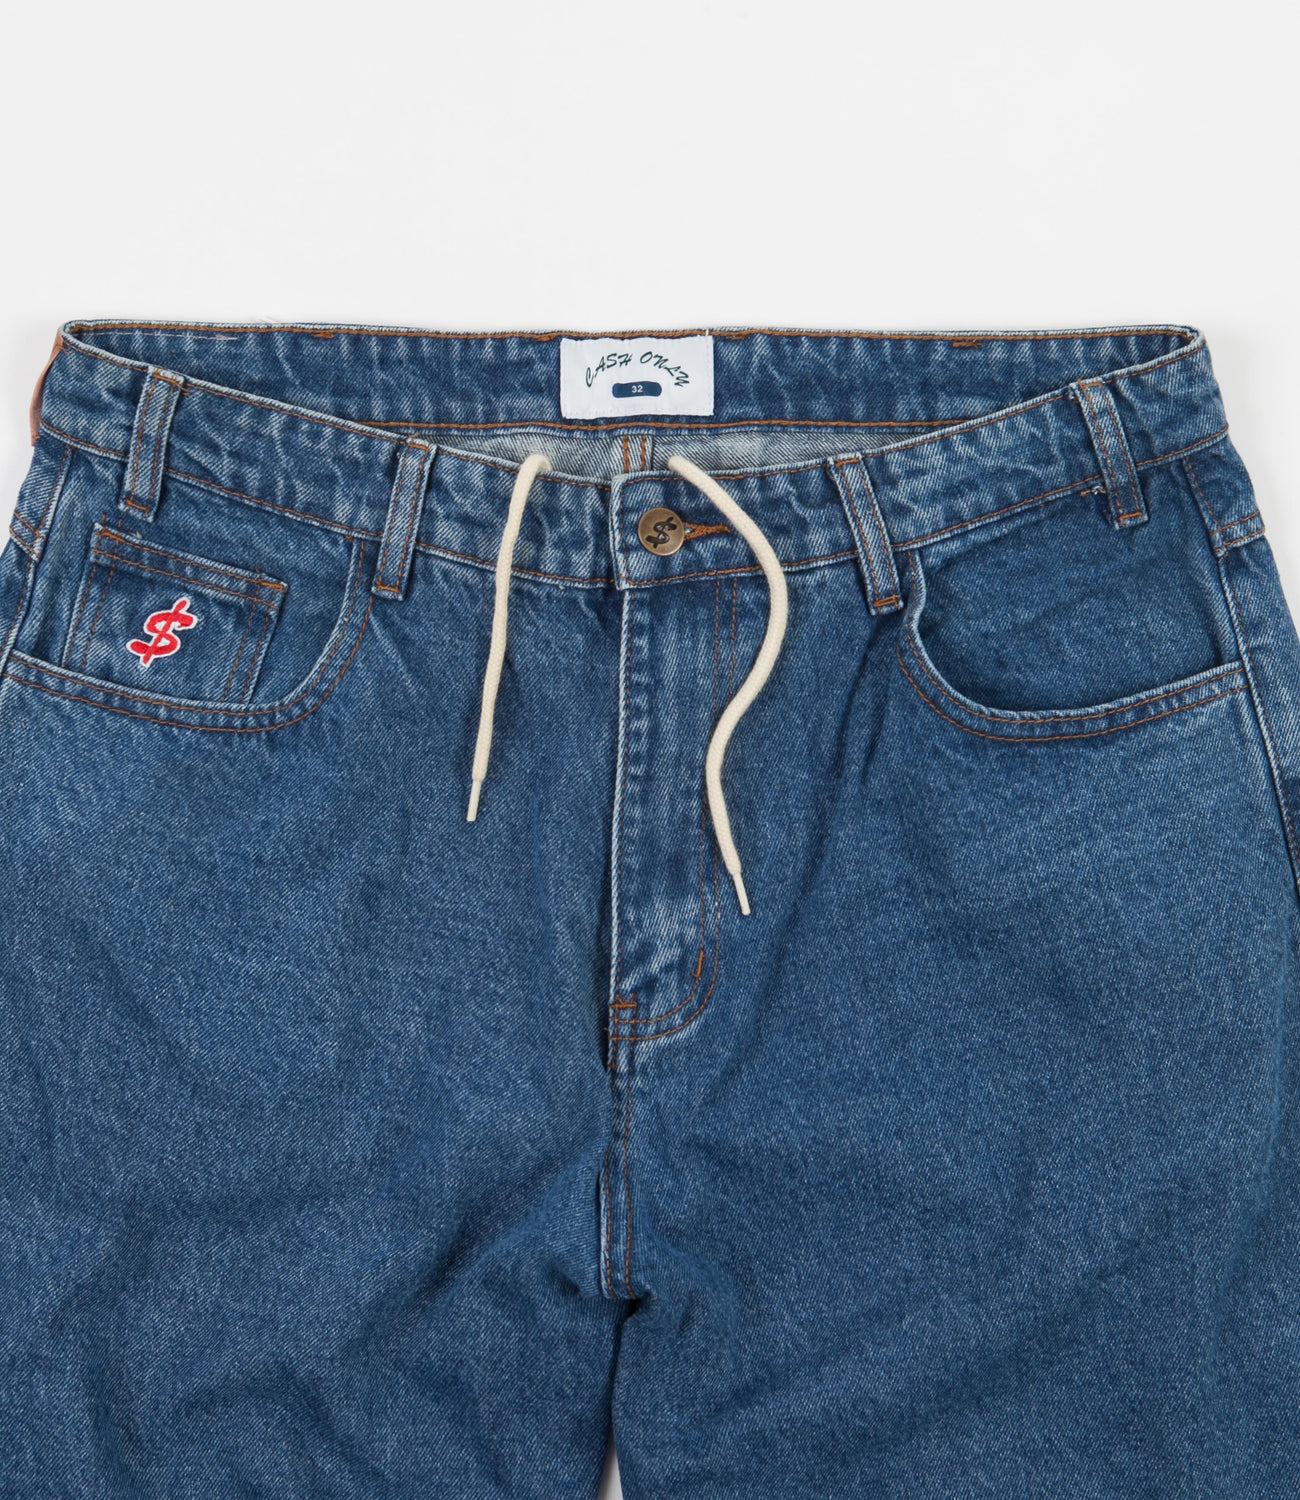 Cash Only Baggy Denim Jeans - Washed Indigo | Flatspot